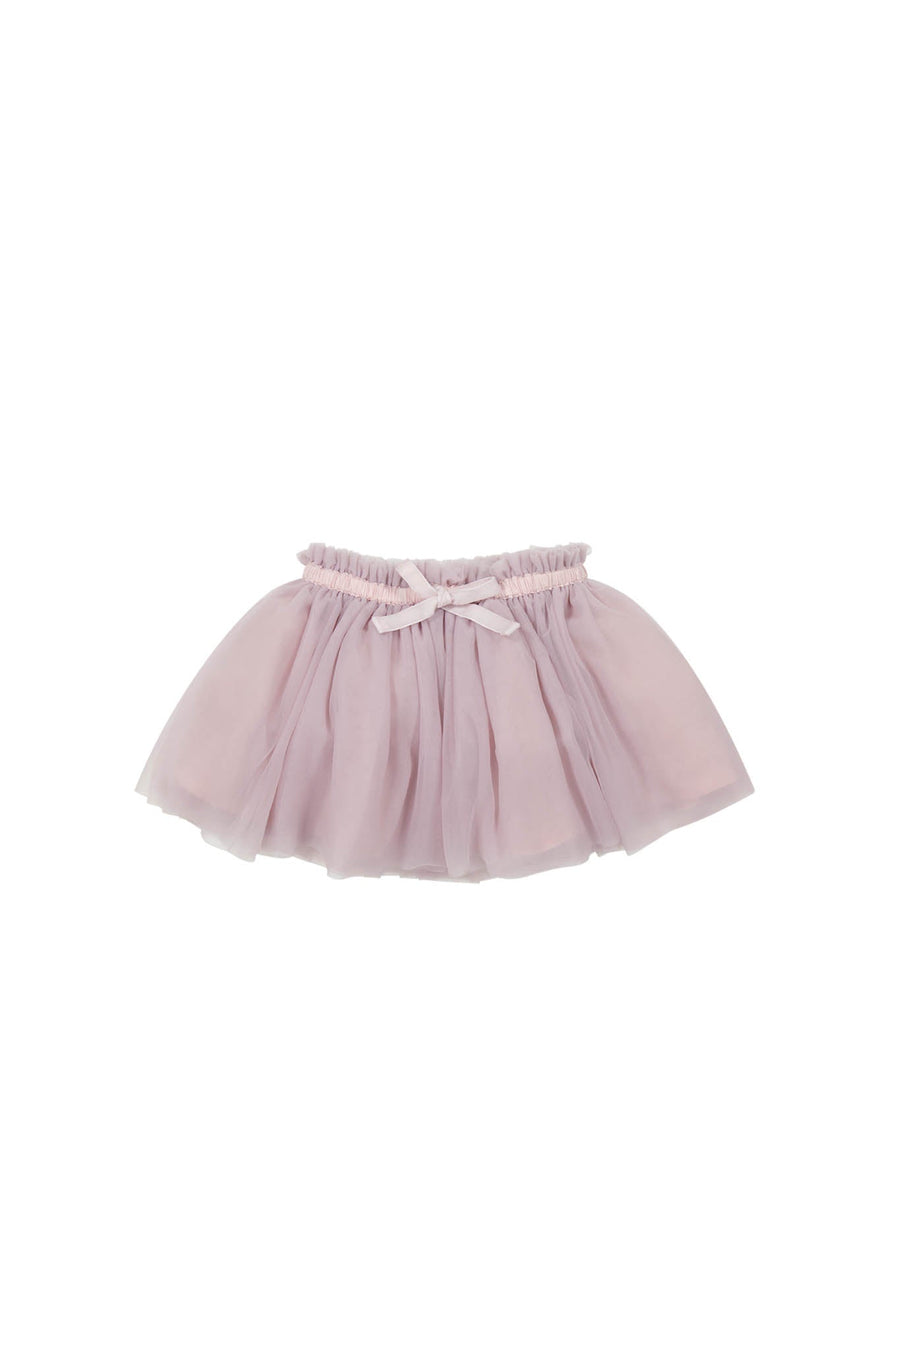 Classic Tutu Skirt - Daydream Childrens Skirt from Jamie Kay USA